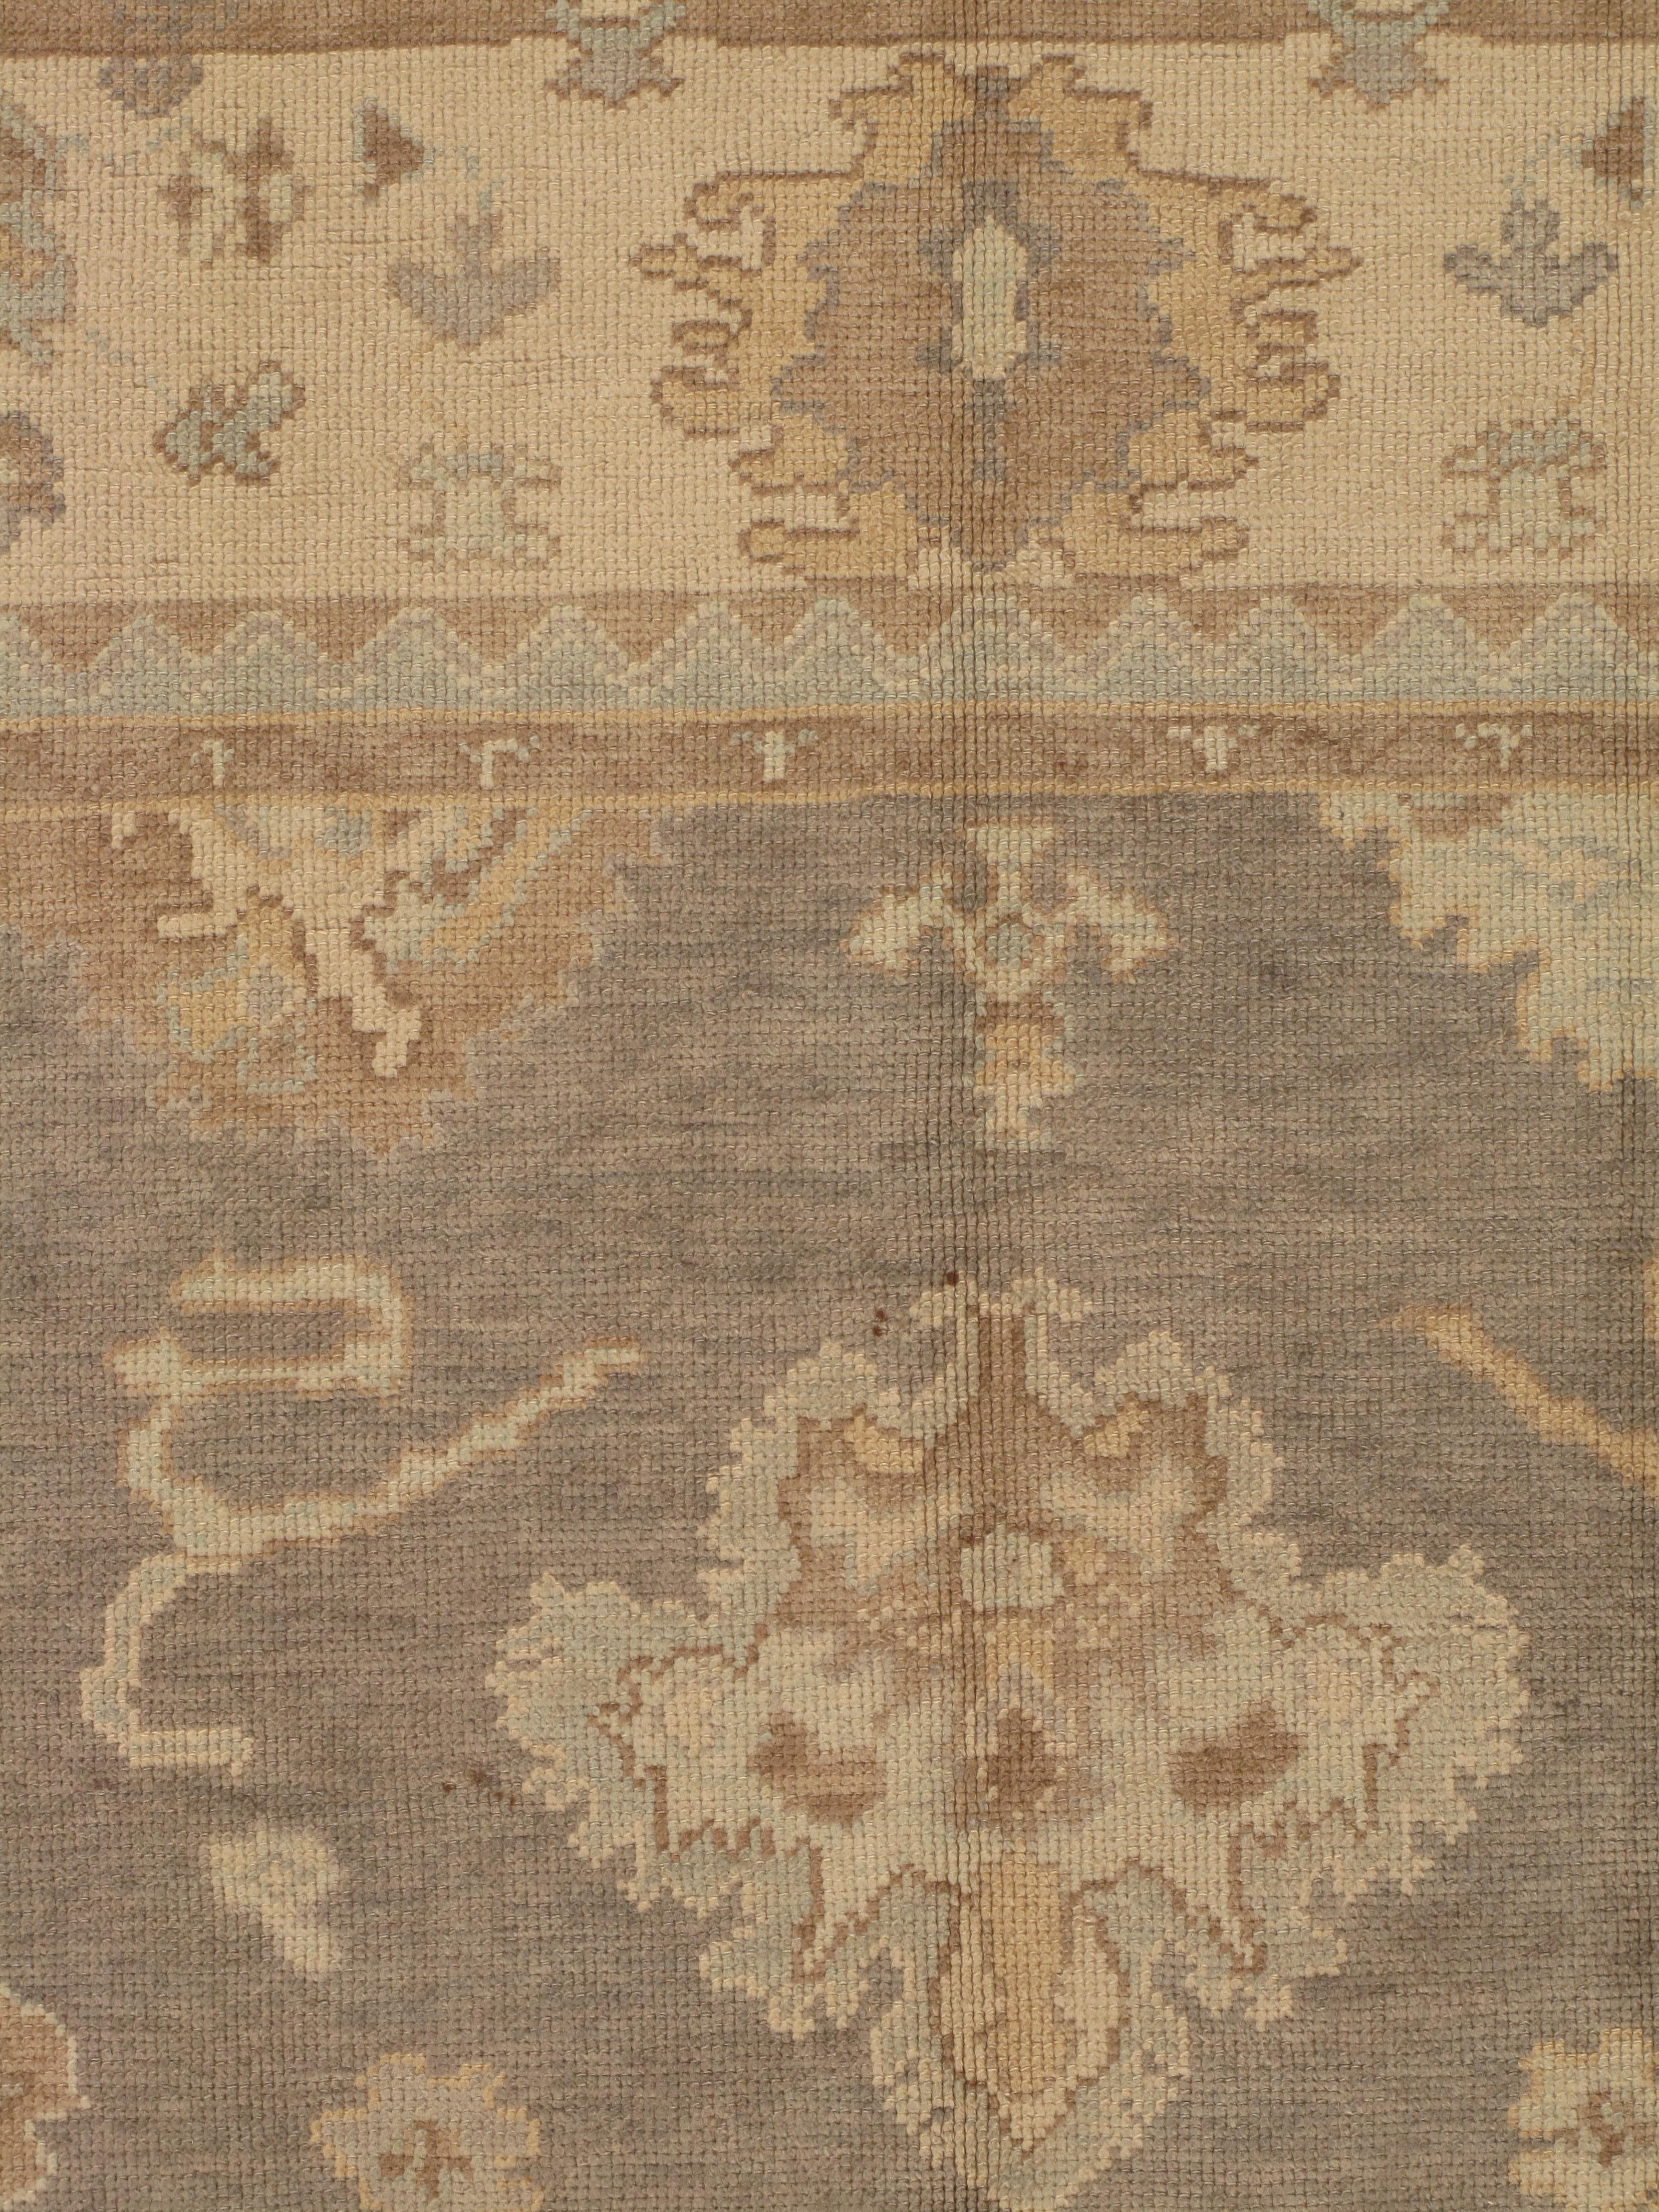 Les tapis Oushak, également connus sous le nom de tapis Ushak ou Usak, sont réputés pour leur beauté intemporelle, leur riche histoire et leur artisanat exceptionnel. Originaires de la région d'Oushak, dans l'ouest de la Turquie, ces tapis sont